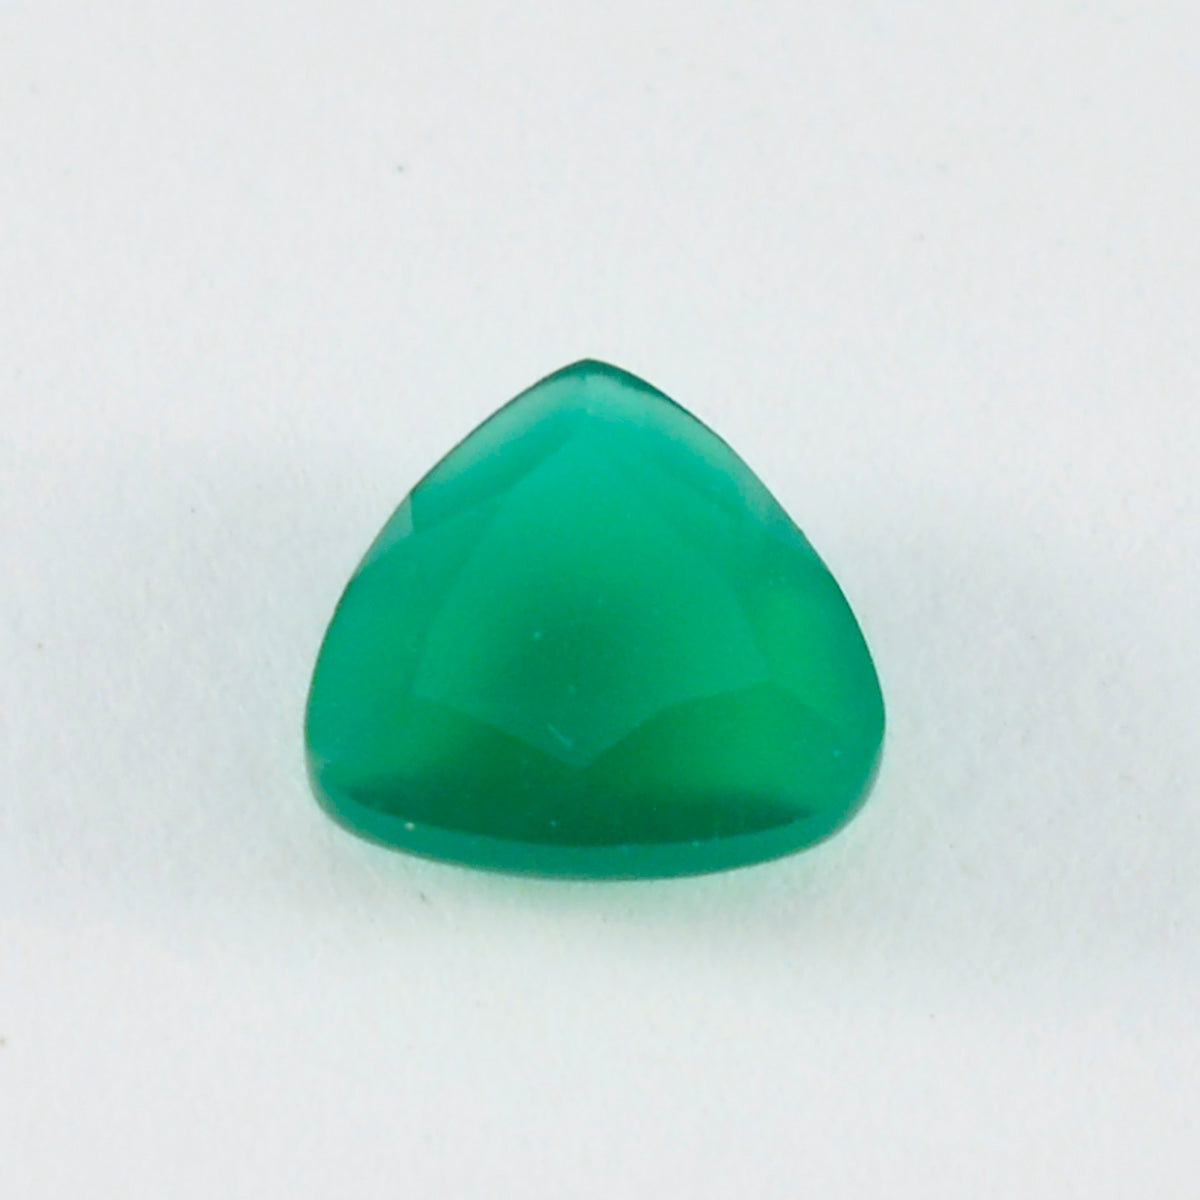 riyogems 1 шт. настоящий зеленый оникс ограненный 13x13 мм форма триллиона удивительного качества свободный камень